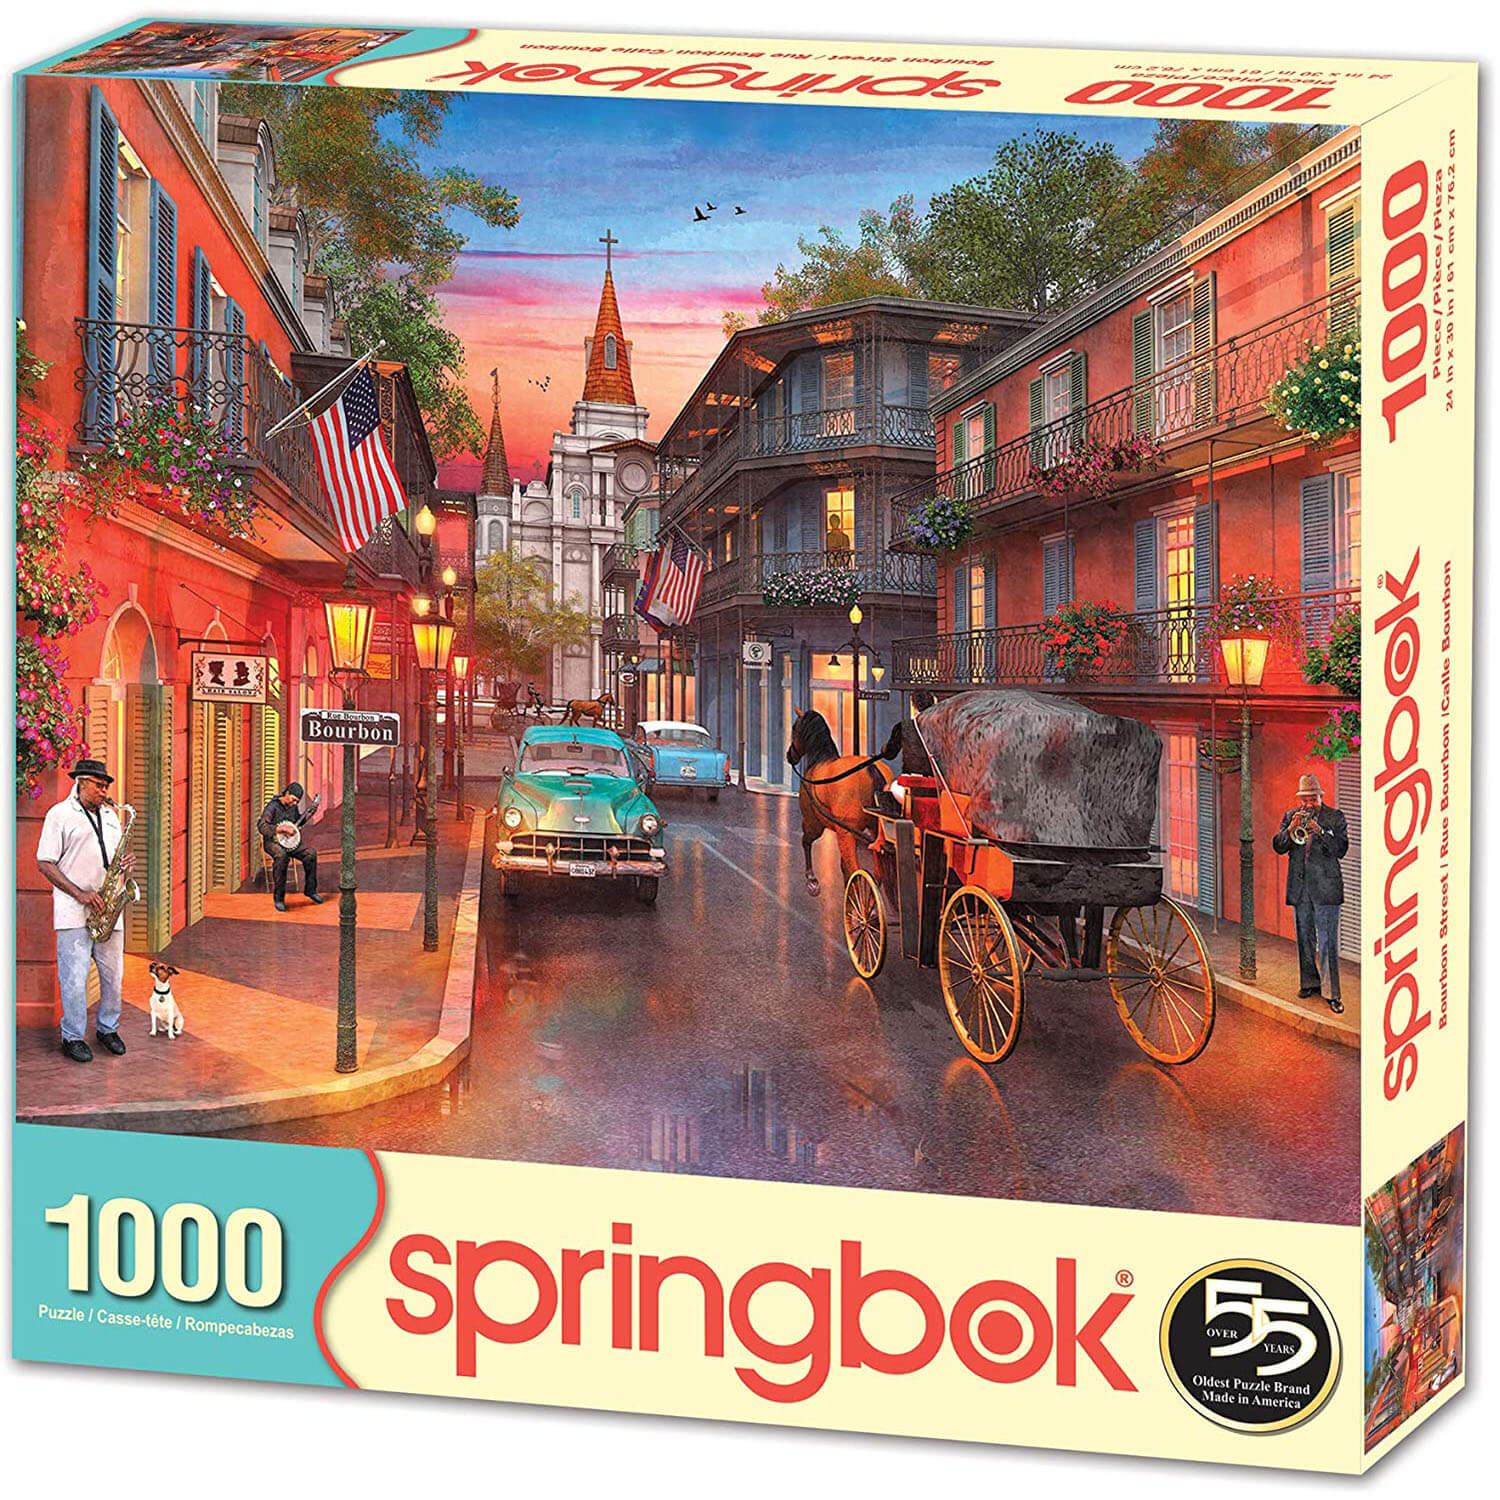 Springbok Bourbon Street 1000 Piece Jigsaw Puzzle